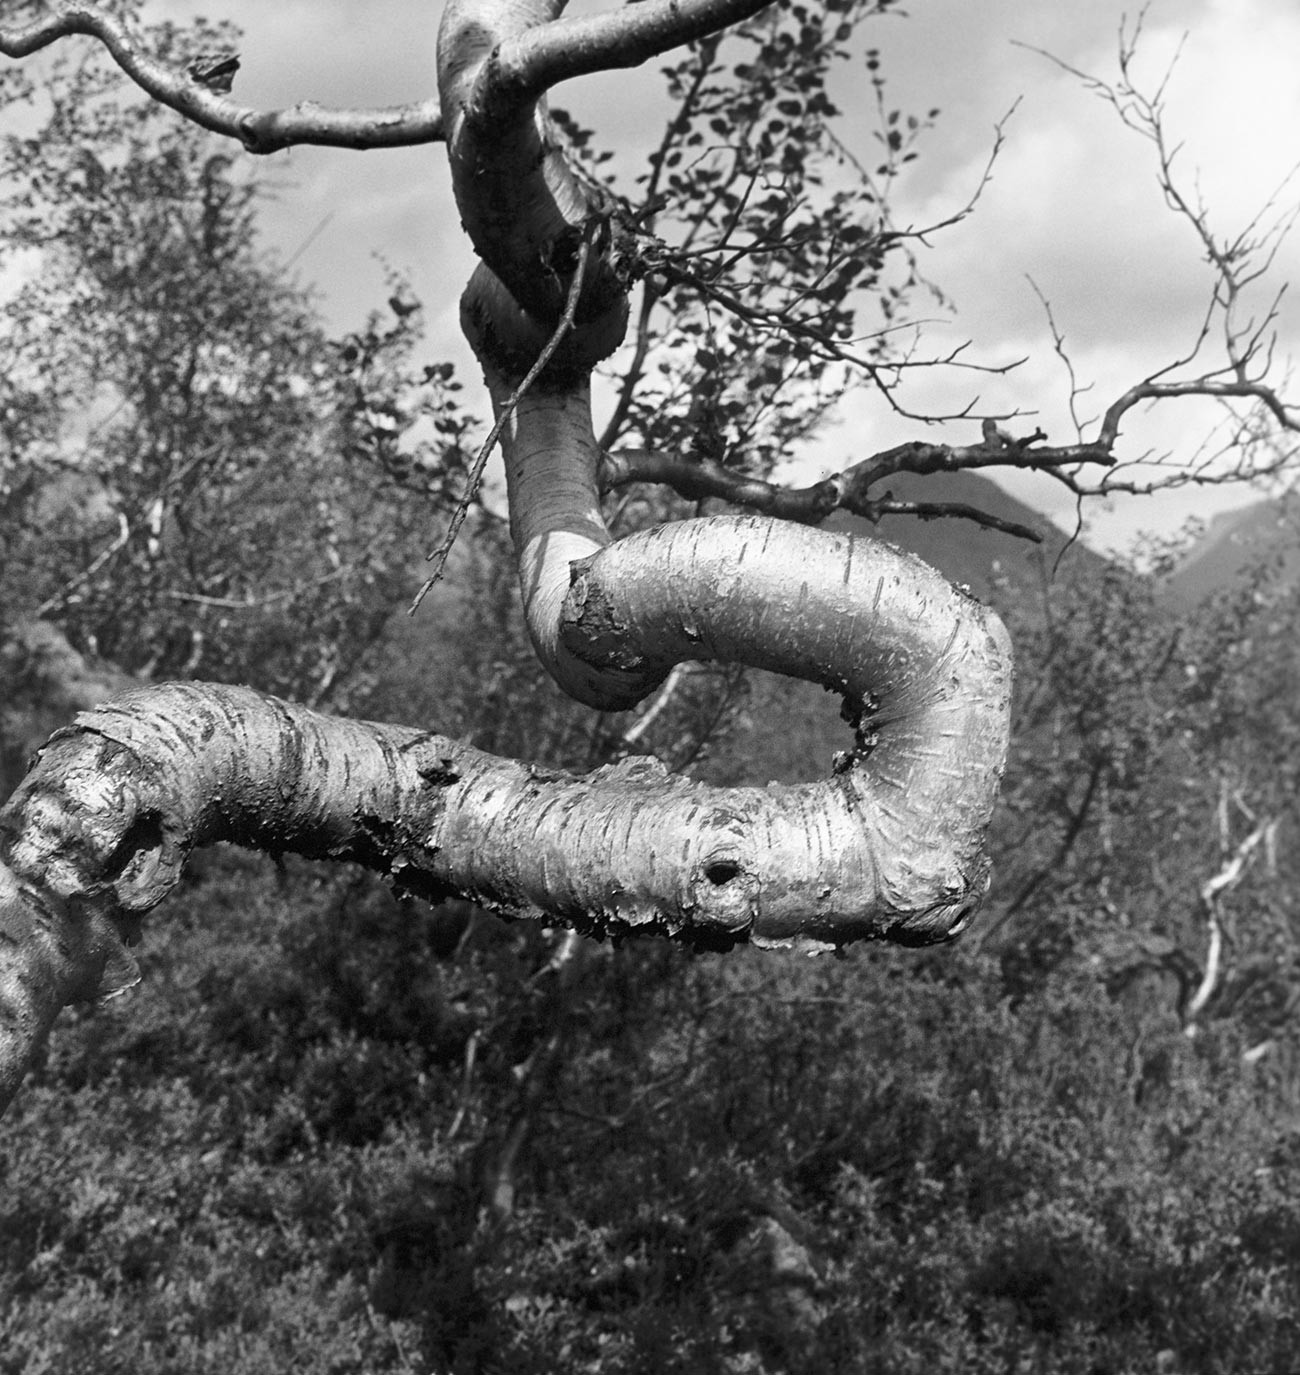 Una betulla contorta dai venti del nord (foto scattata in epoca sovietica)